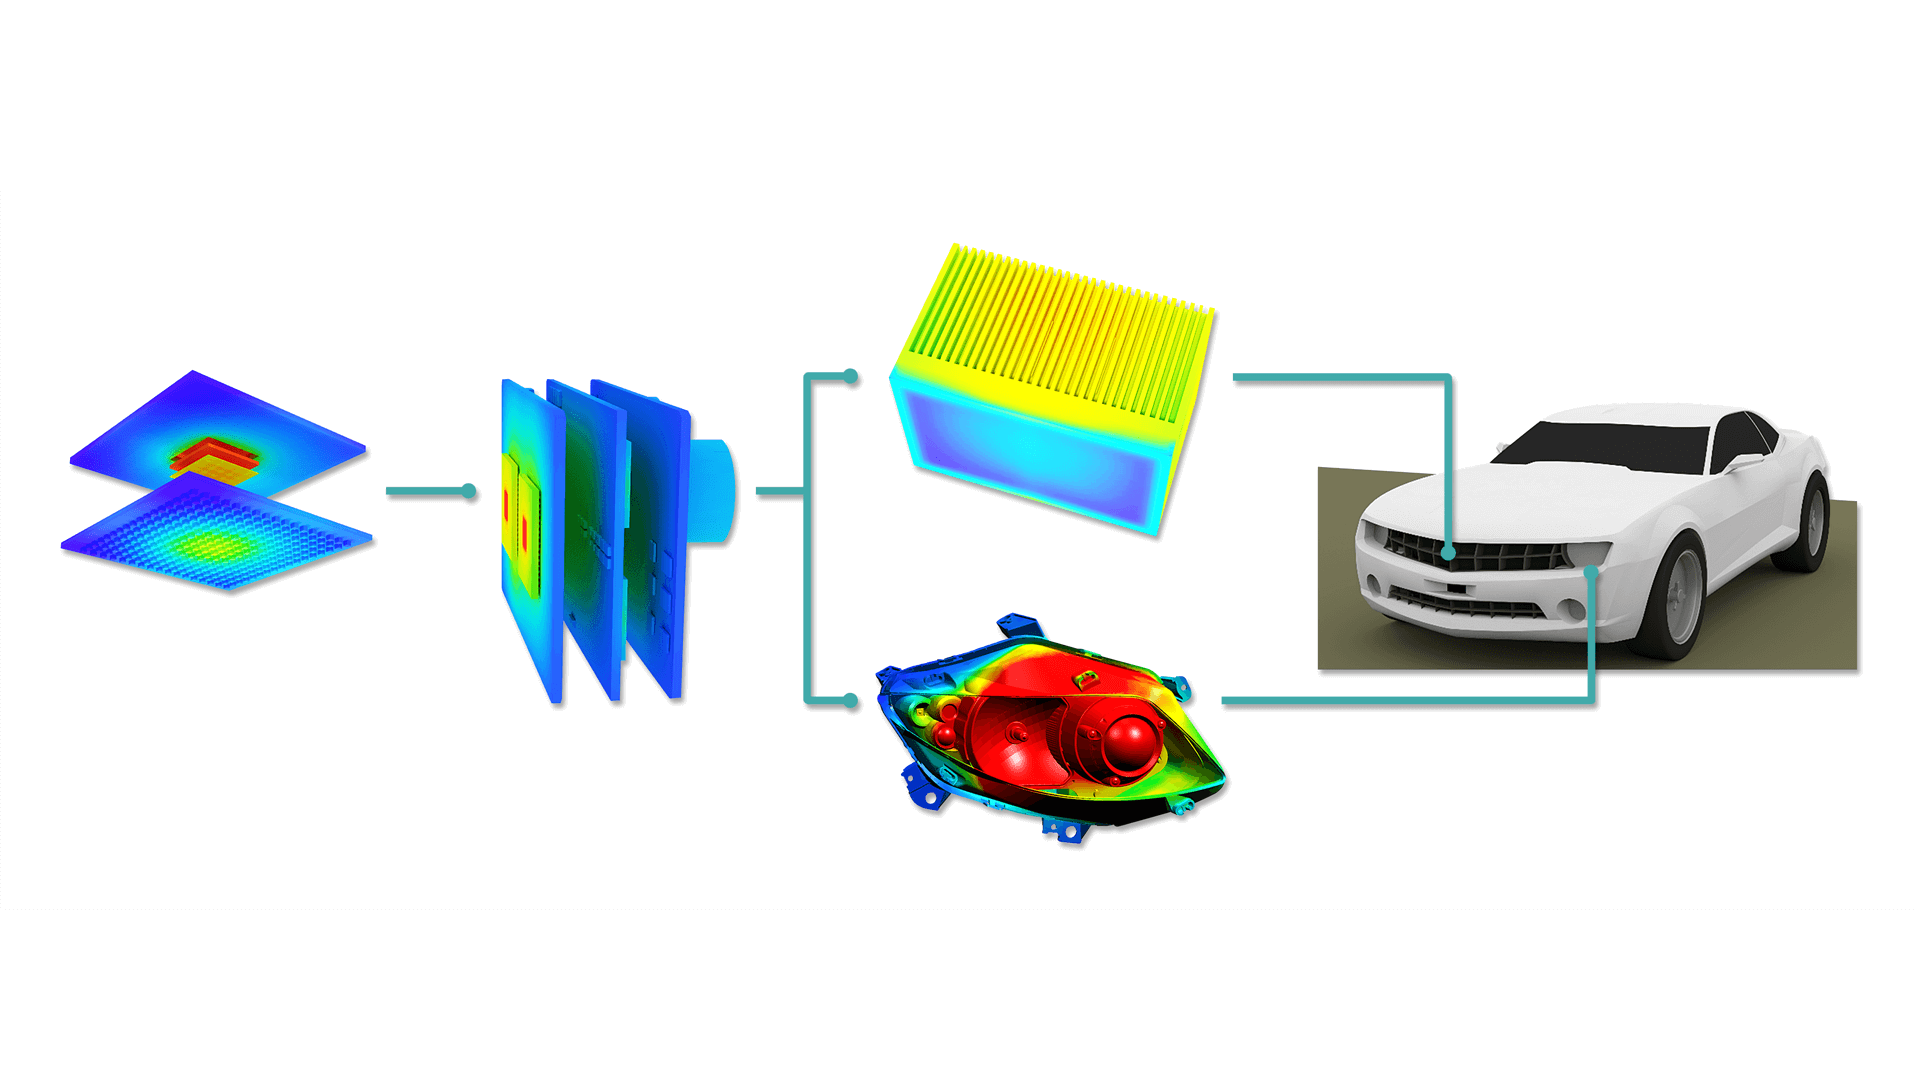 Applicare l’ingegneria guidata dalla simulazione per progettare e ottimizzare i sensori dei veicoli autonomi